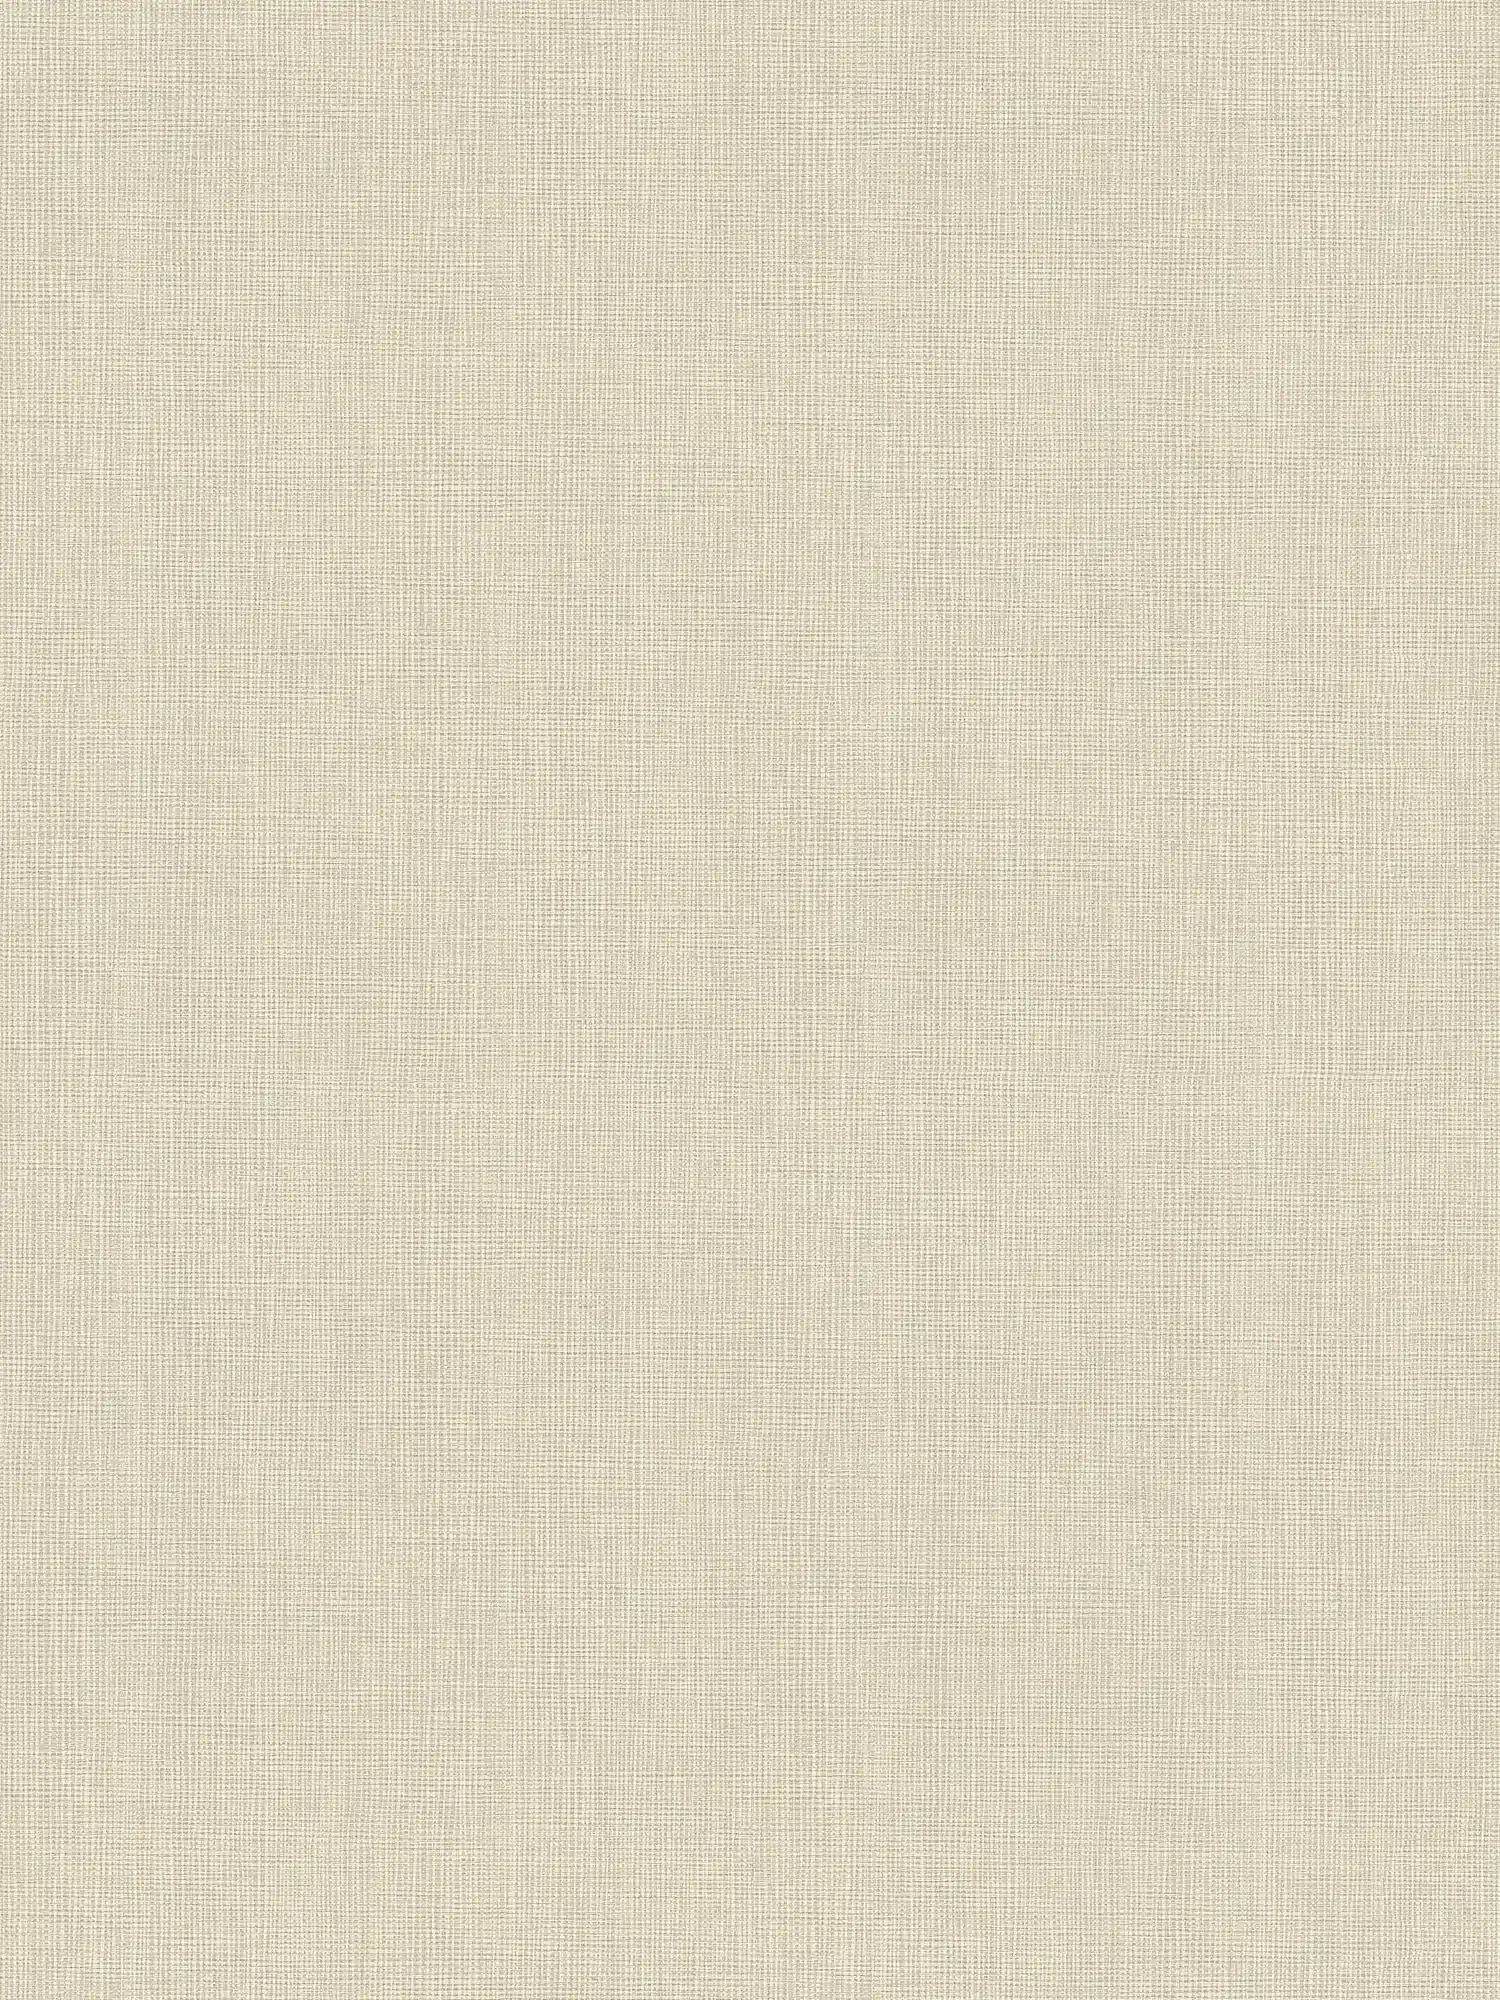 Papier peint intissé uni beige avec motif textile tissé
